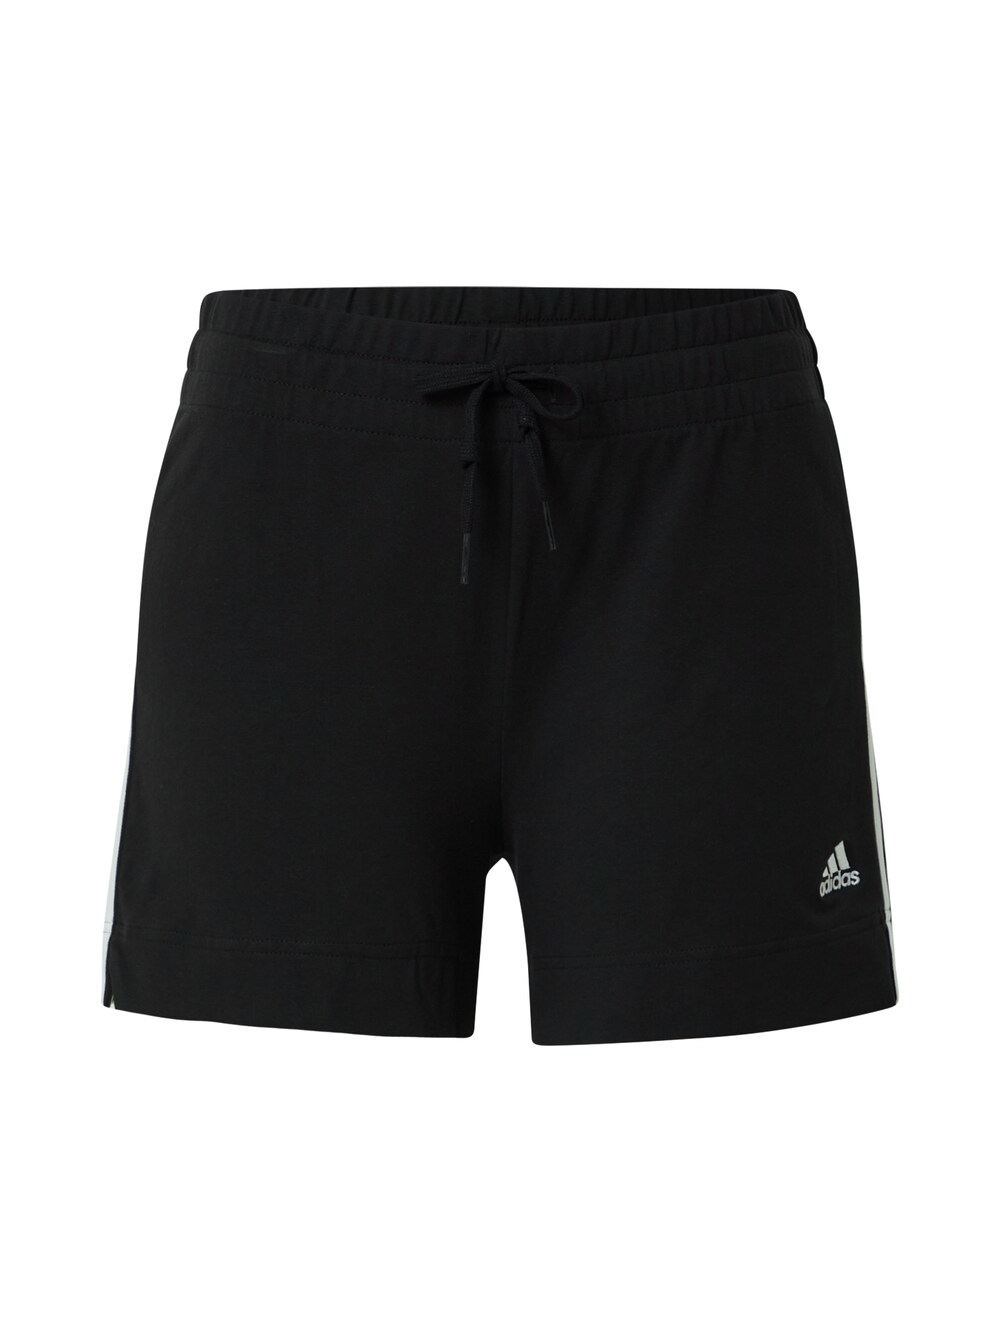 Обычные тренировочные брюки Adidas Essentials, черный